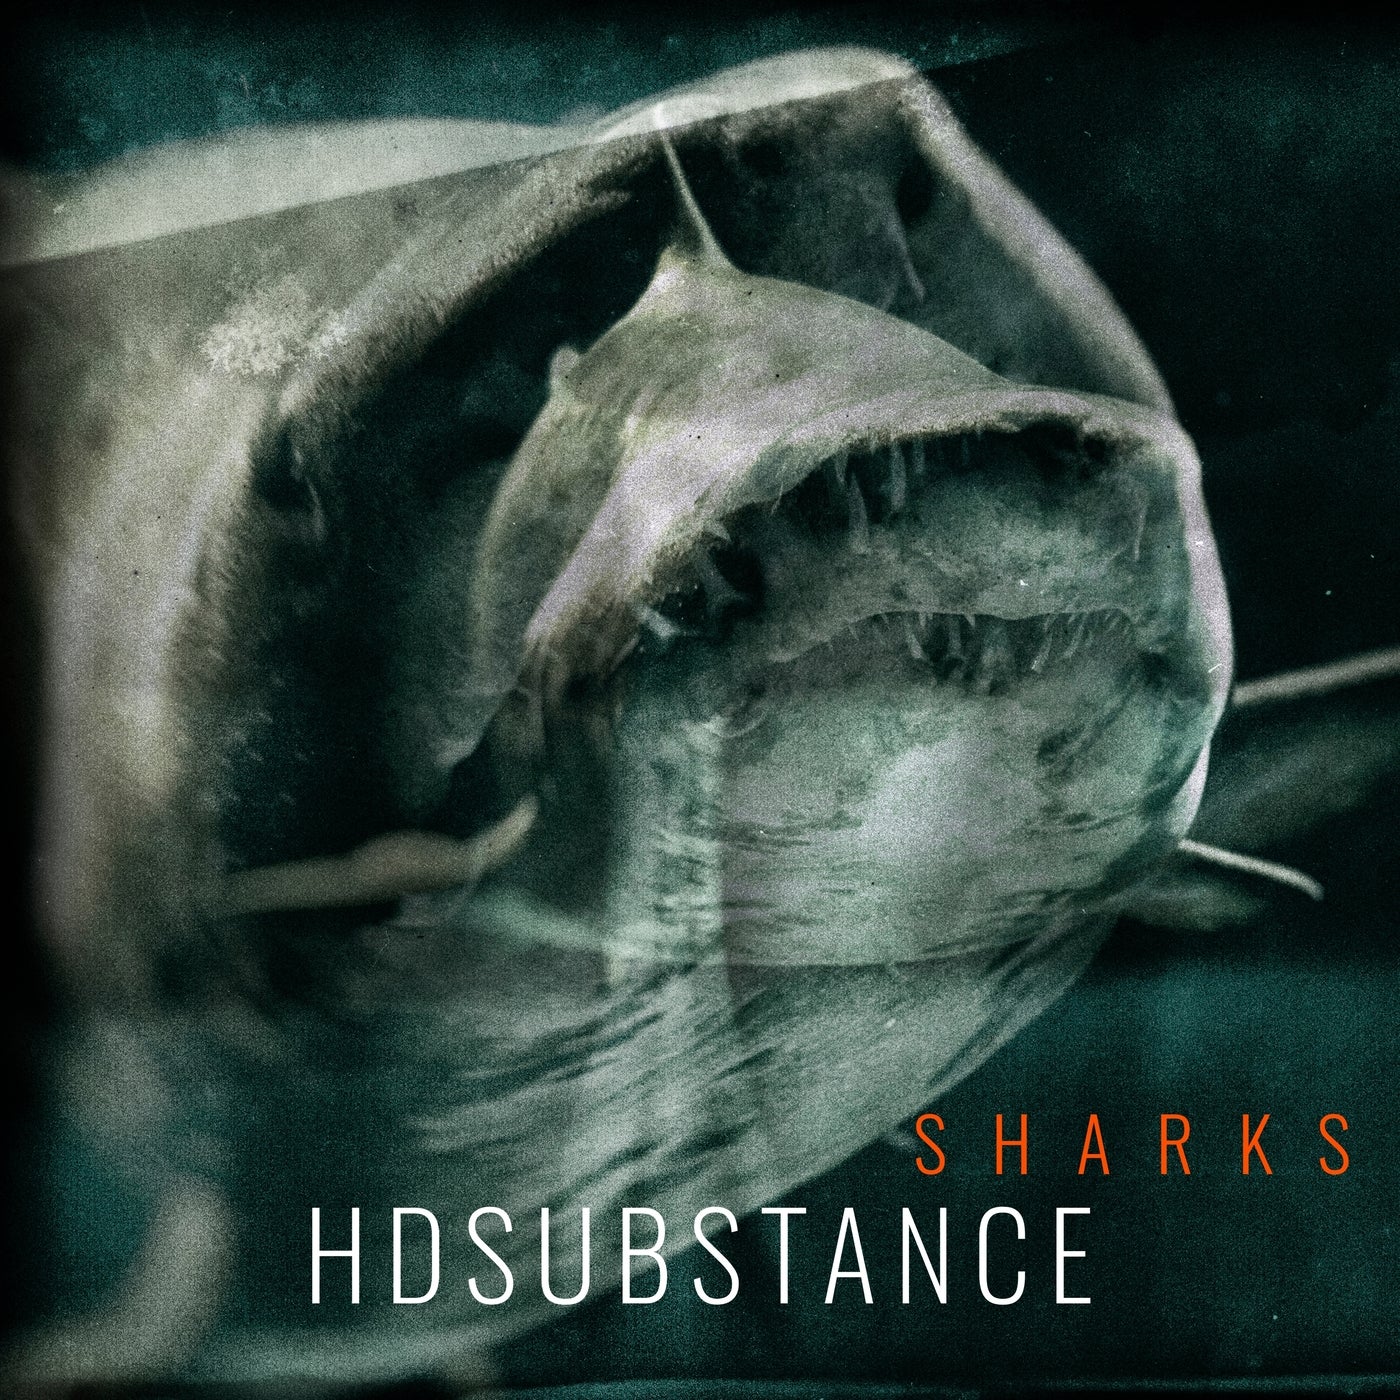 Cover - HD Substance - Angel Shark (Original Mix)